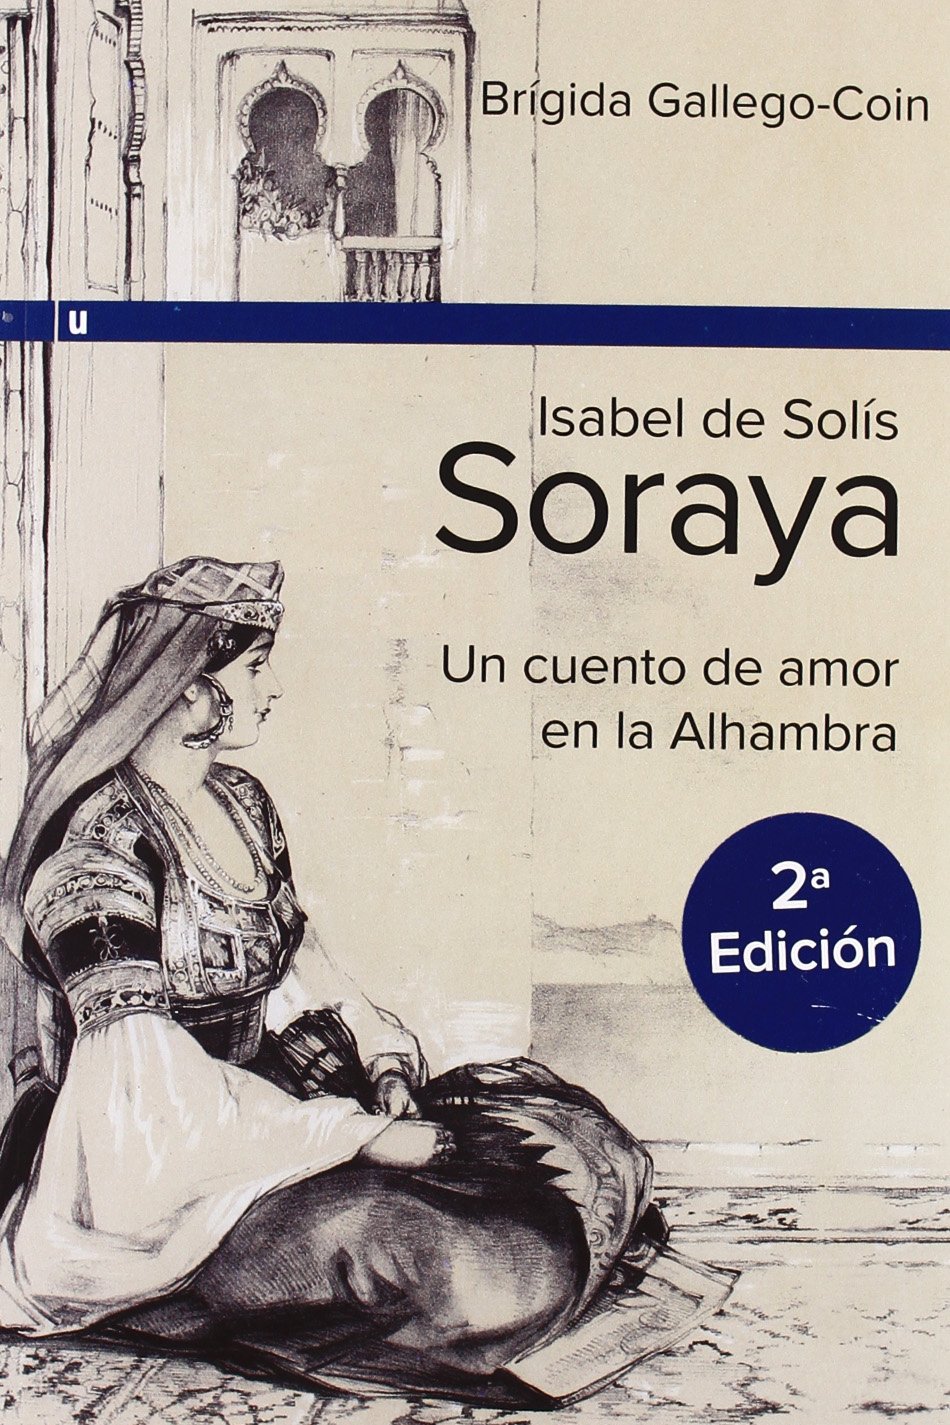 Isabel de Solis Soraya Club de lectura de la Alhambra